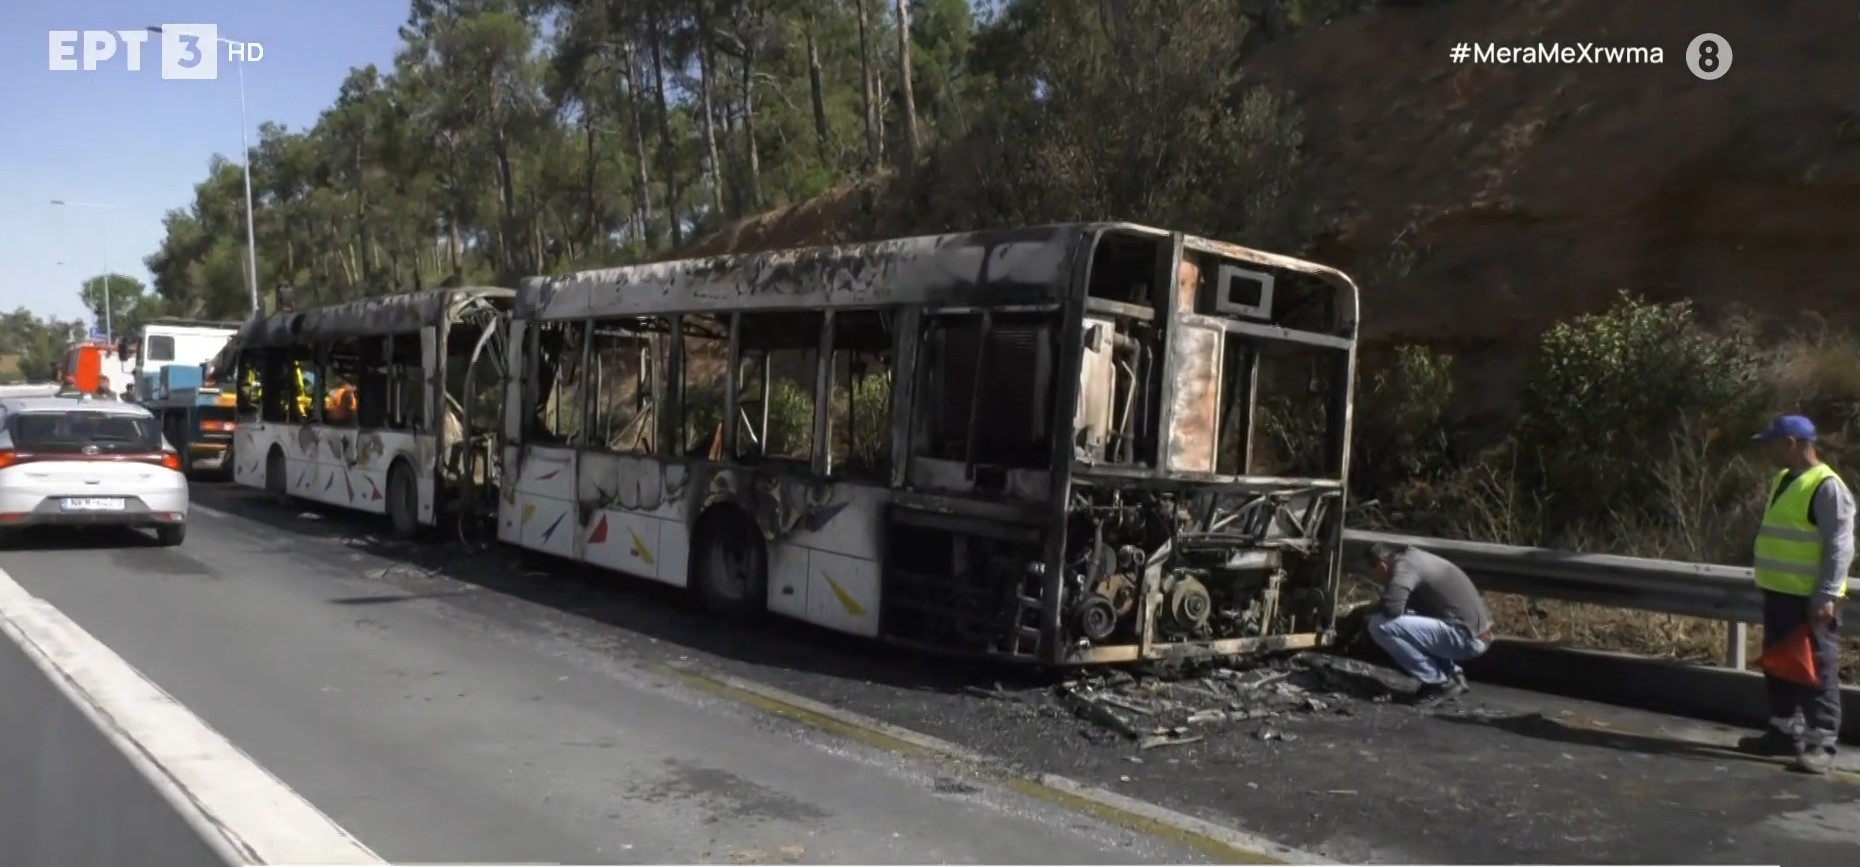 Θεσσαλονίκη: Φωτιά σε λεωφορείο του ΟΑΣΘ στην Περιφερειακή – Έσβησε χωρίς τραυματίες (video)